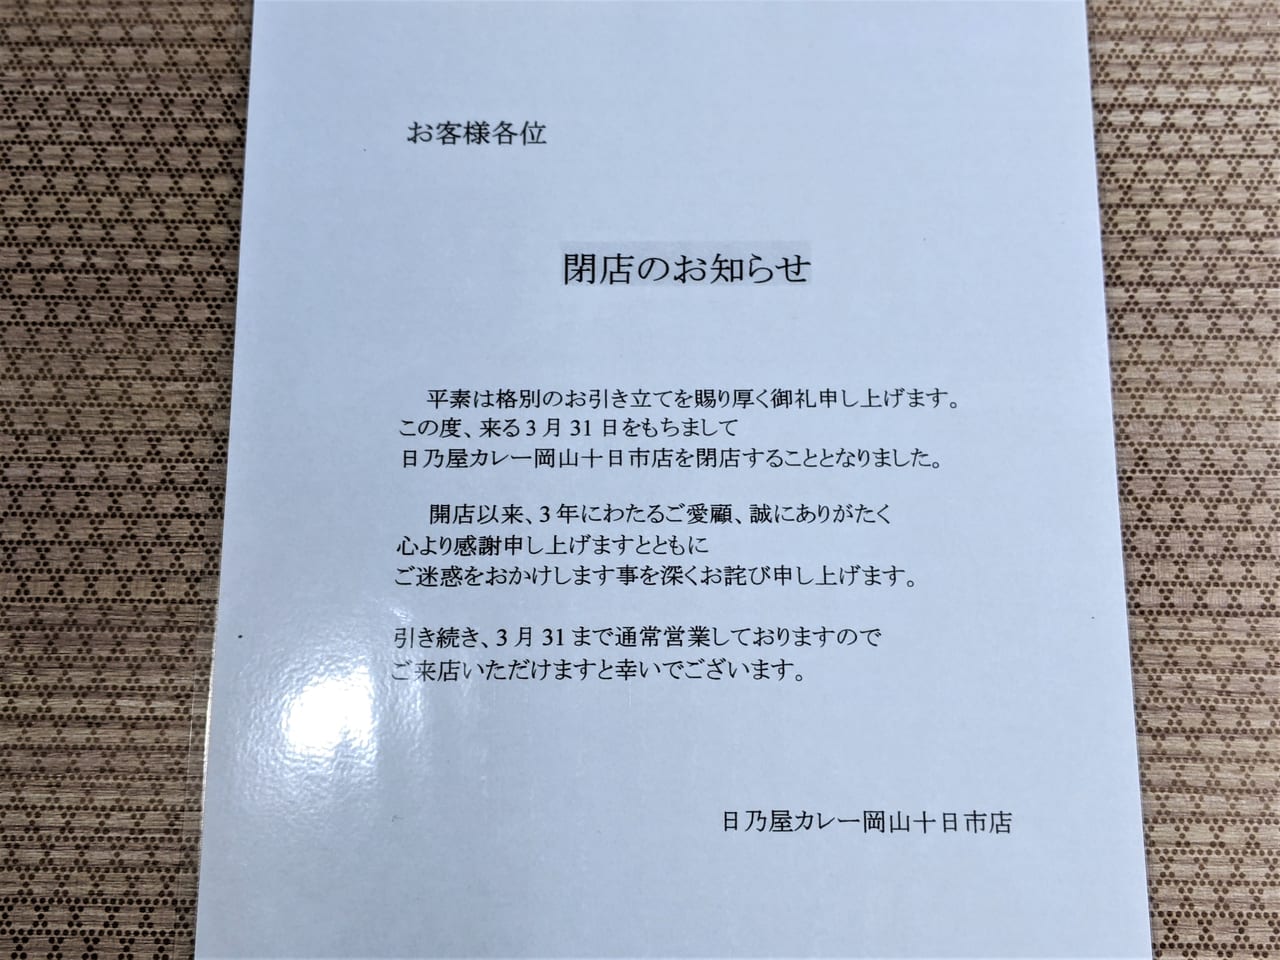 「日乃屋カレー岡山十日市店」の閉店のお知らせ